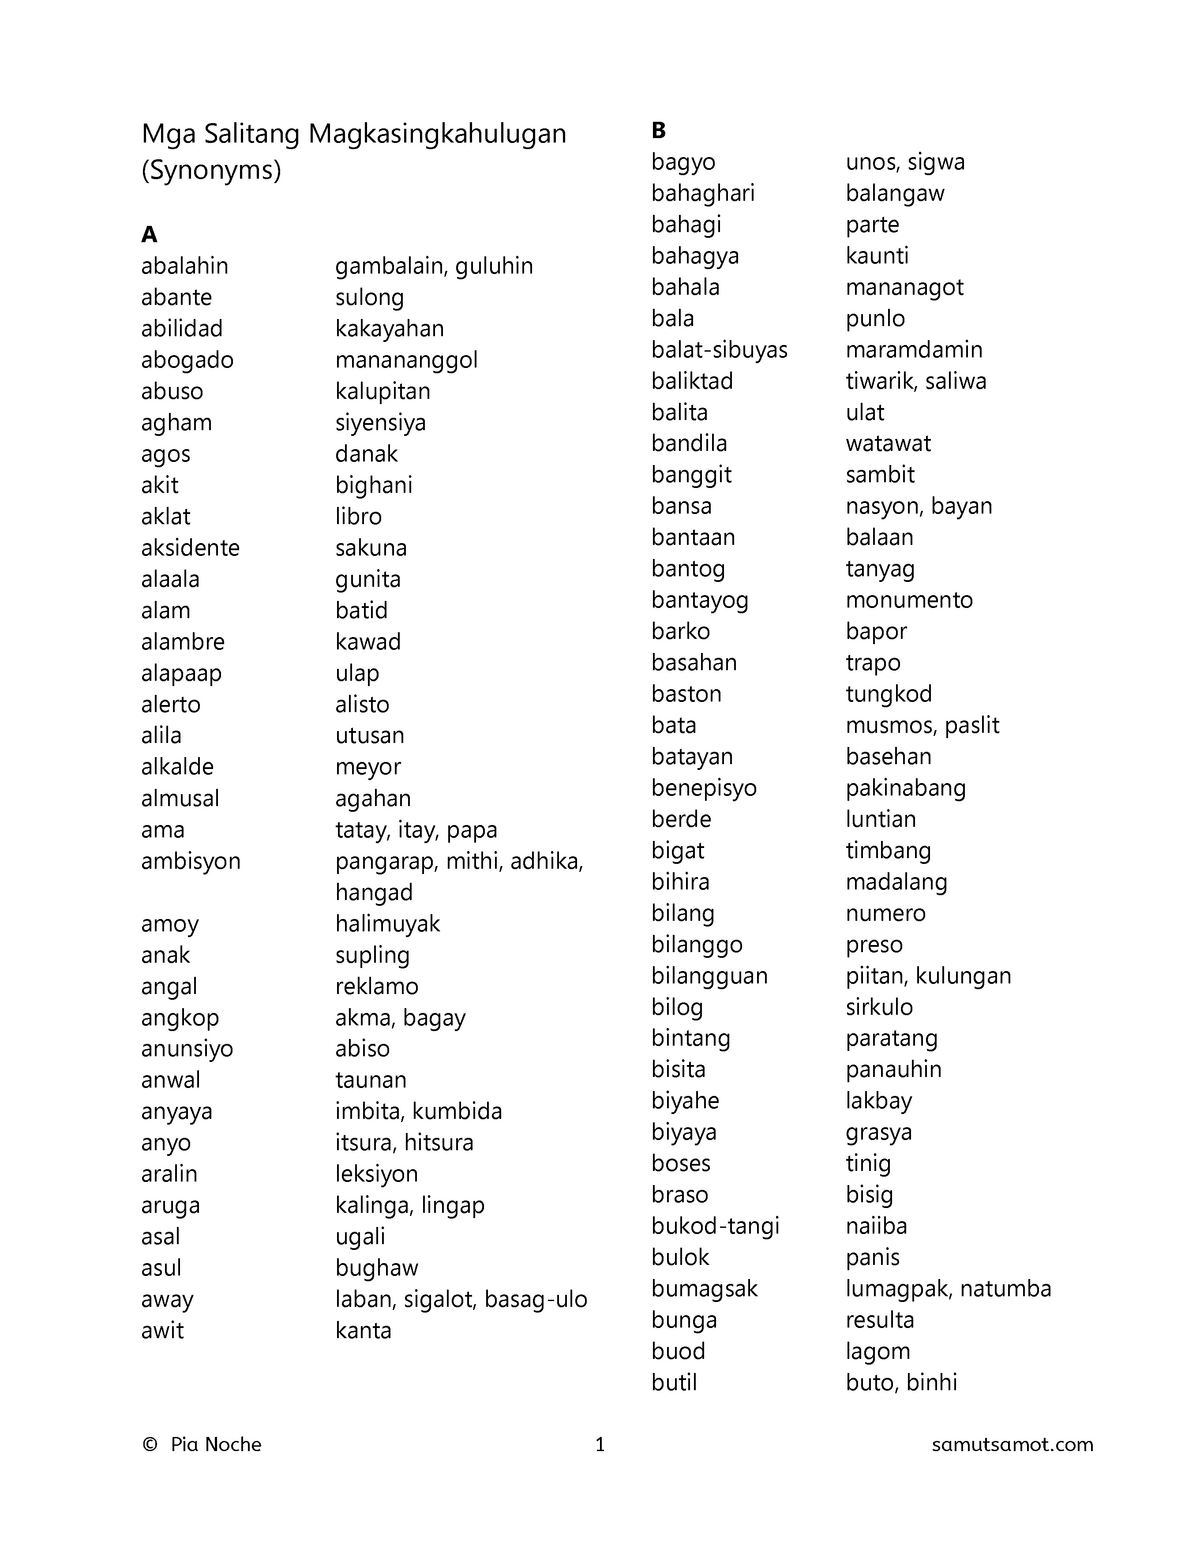 List of Filipino synonyms with pairs - Mga Salitang Magkasingkahulugan